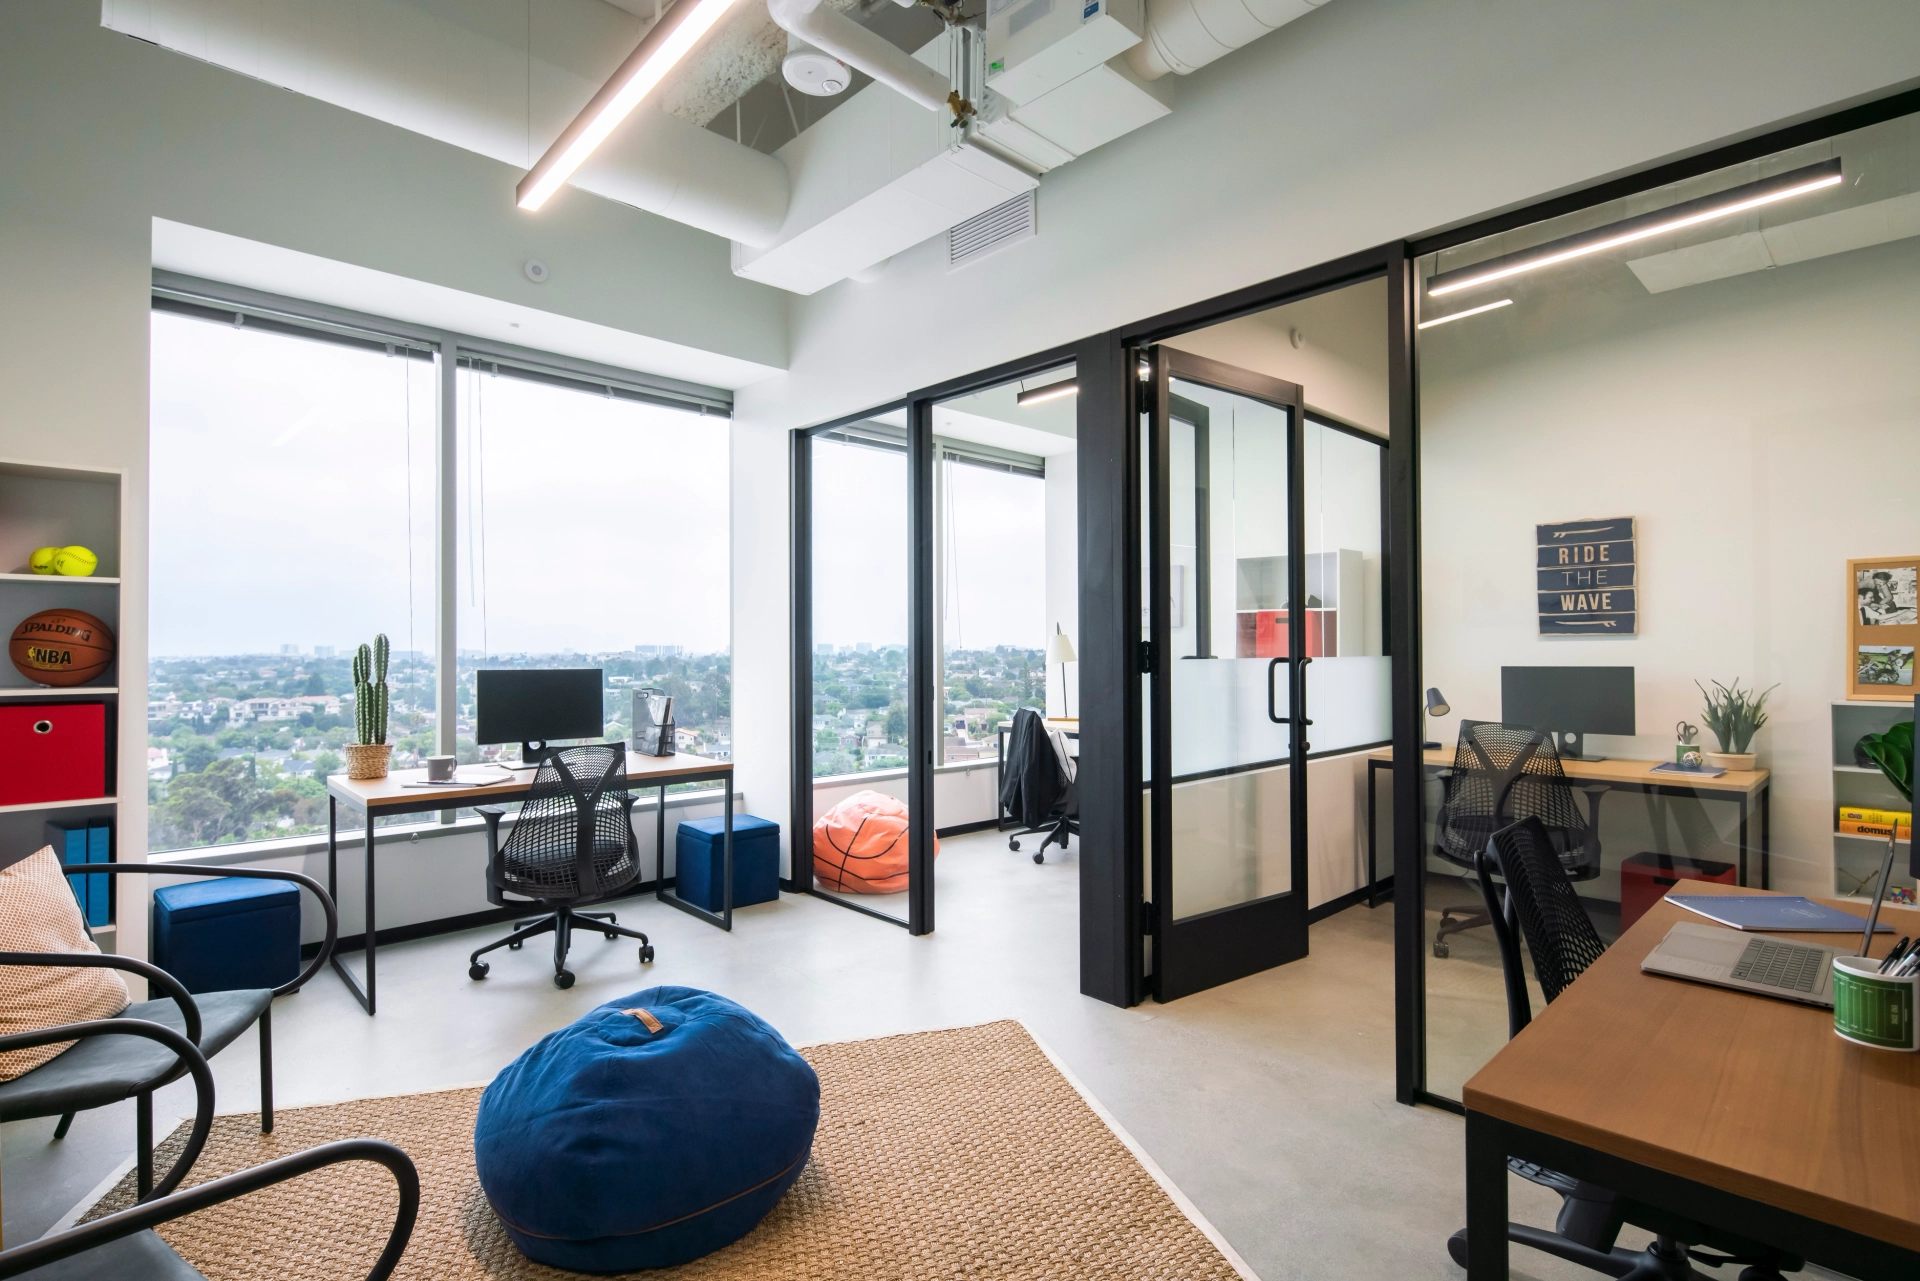 Moderne coworkingruimte in Los Angeles met glazen scheidingswanden, individuele werkplekken en uitzicht op het stadsbeeld door grote ramen. Ook is een informele zithoek met zitzakken zichtbaar.